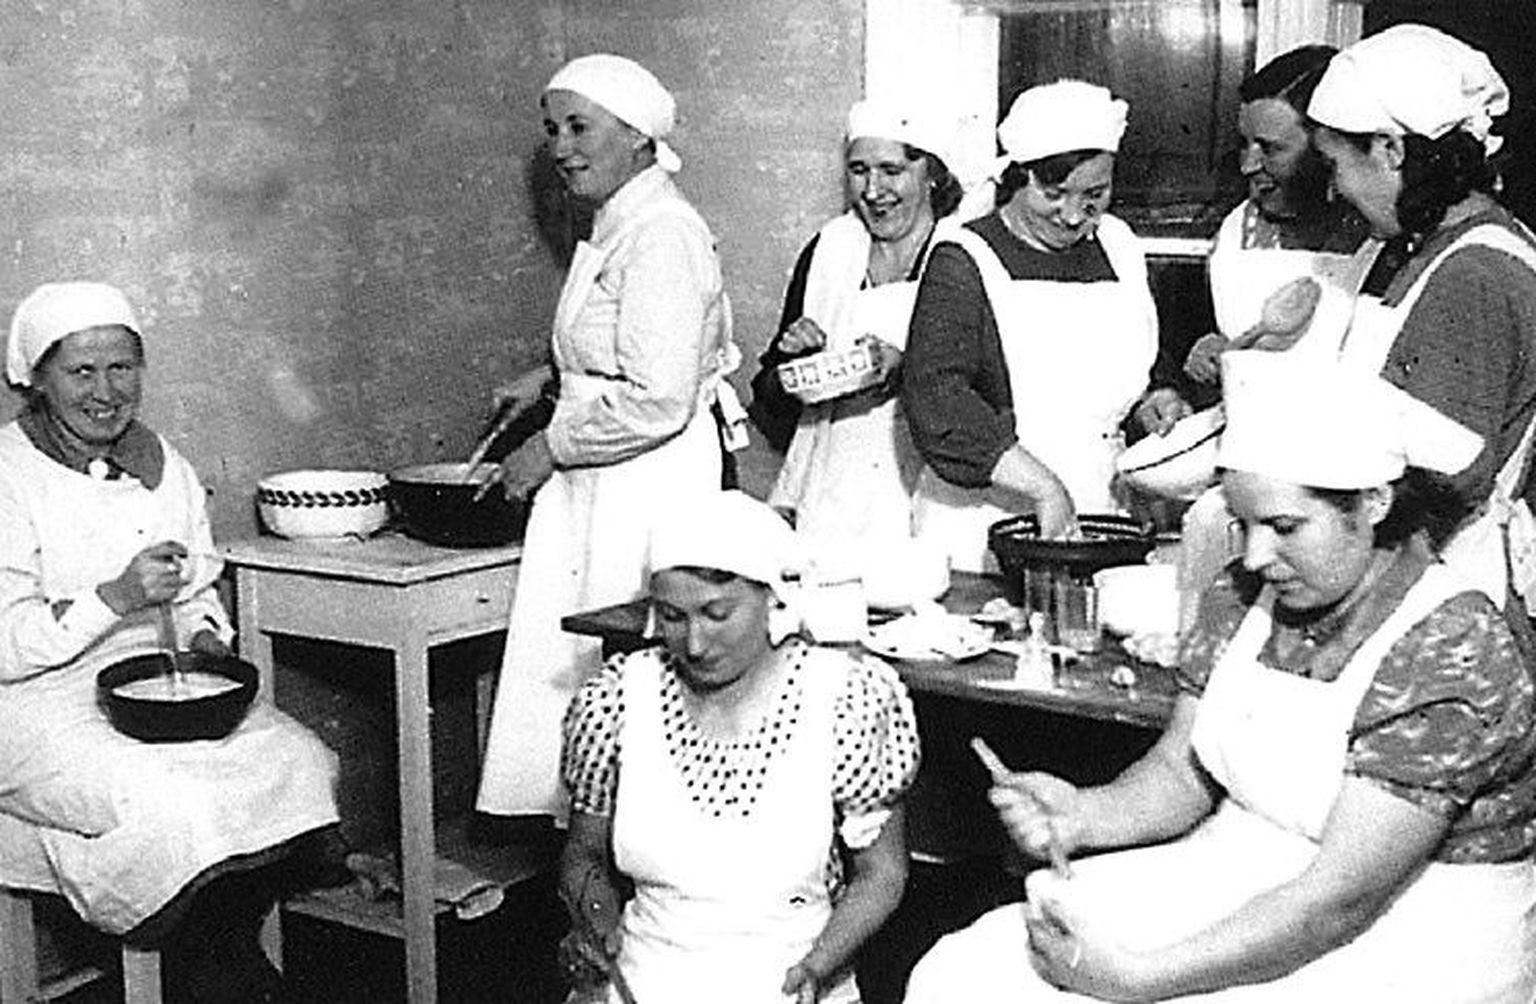 Sõjaeelsel Aegnal kihas vilgas seltsielu, näiteks Aegna Naisselts korraldas mitmesuguseid kursusi. 1939. aastal tehtud ülesvõttel on prouad kogunenud küpsetamiskursusele.